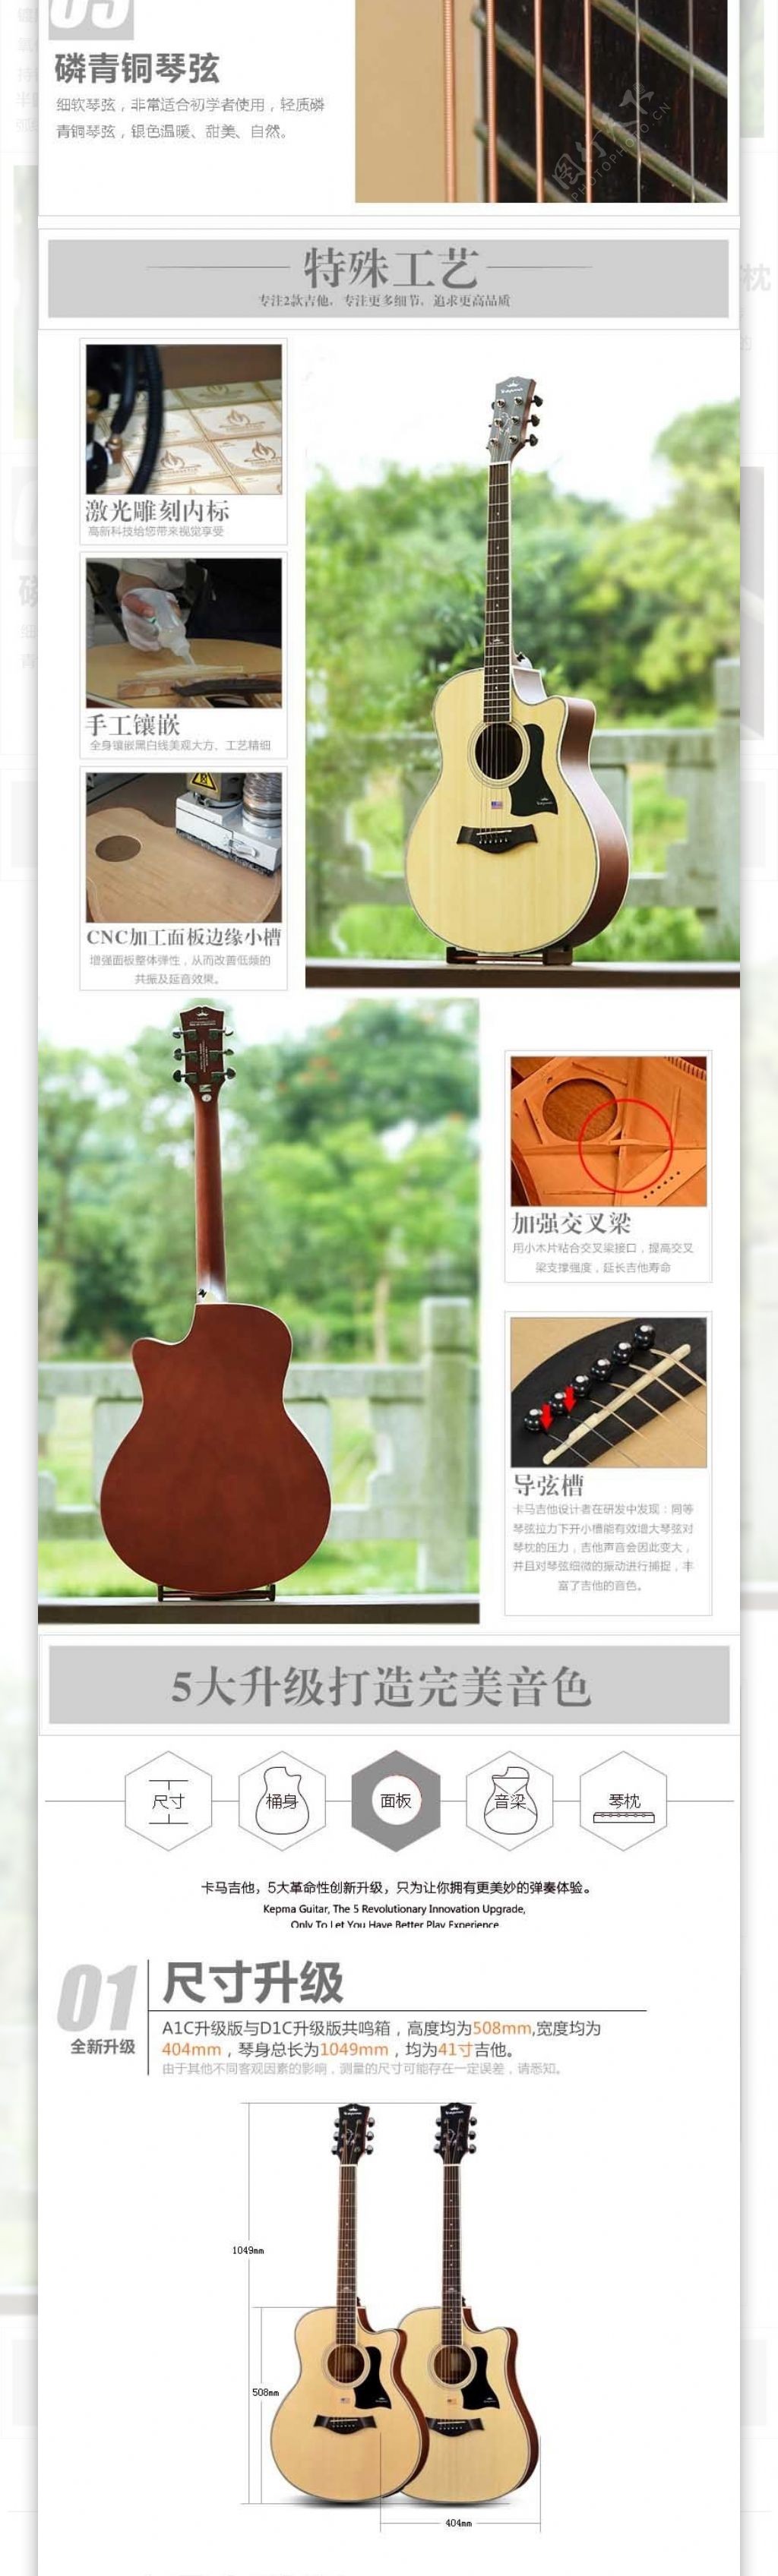 淘宝吉他乐器详情页描述模板乐器